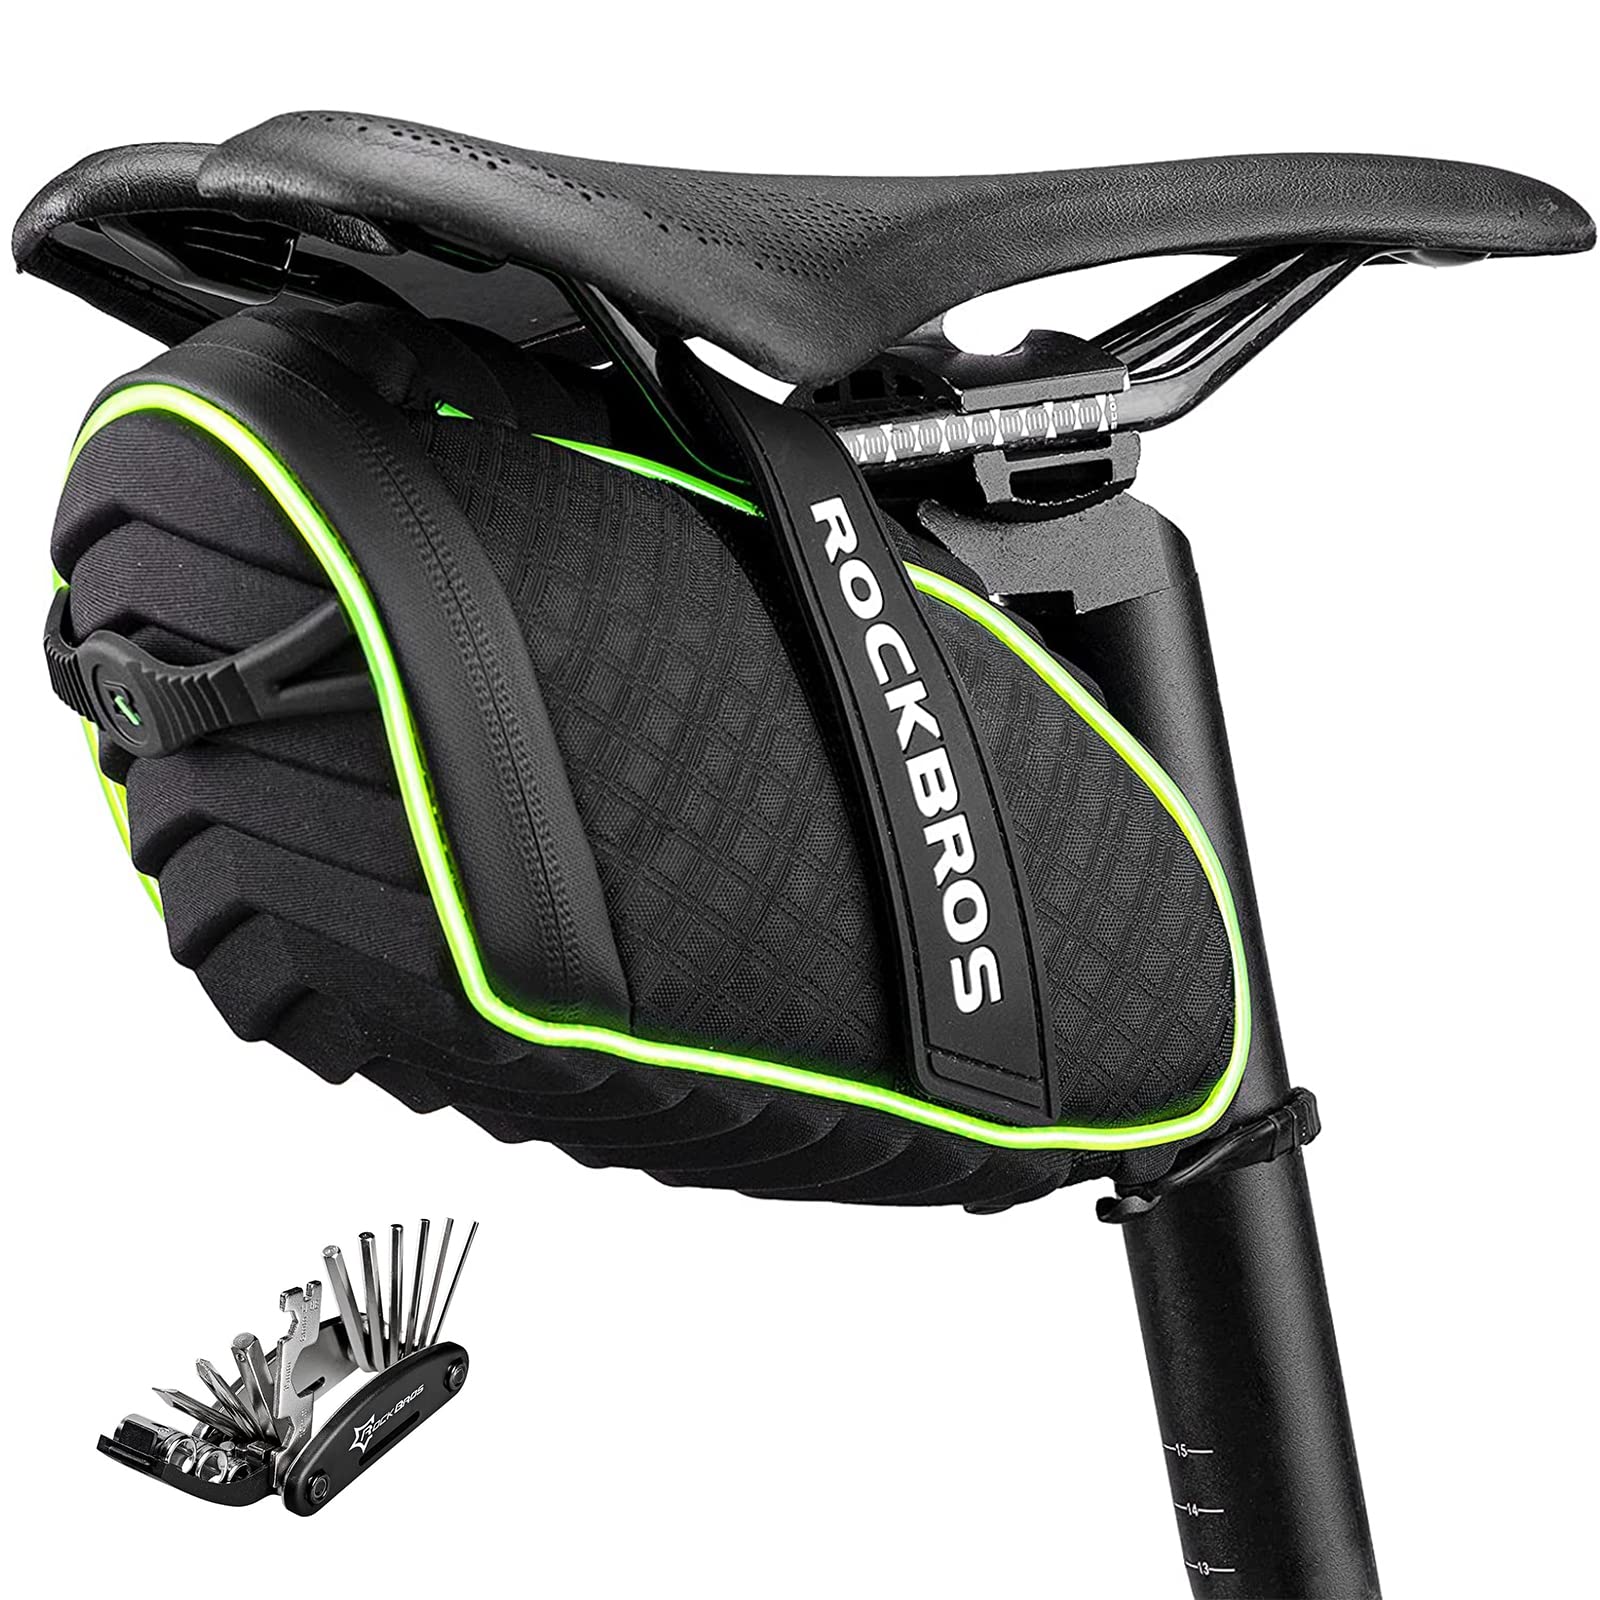 ROCKBROS Fahrrad Satteltaschen Fahrradsitz Taschen Werkzeugtasche Fahrradtasche Wasserabweisend beim Leichten Regen Reflektierend Schwarz Grün + Werkzeug von ROCKBROS